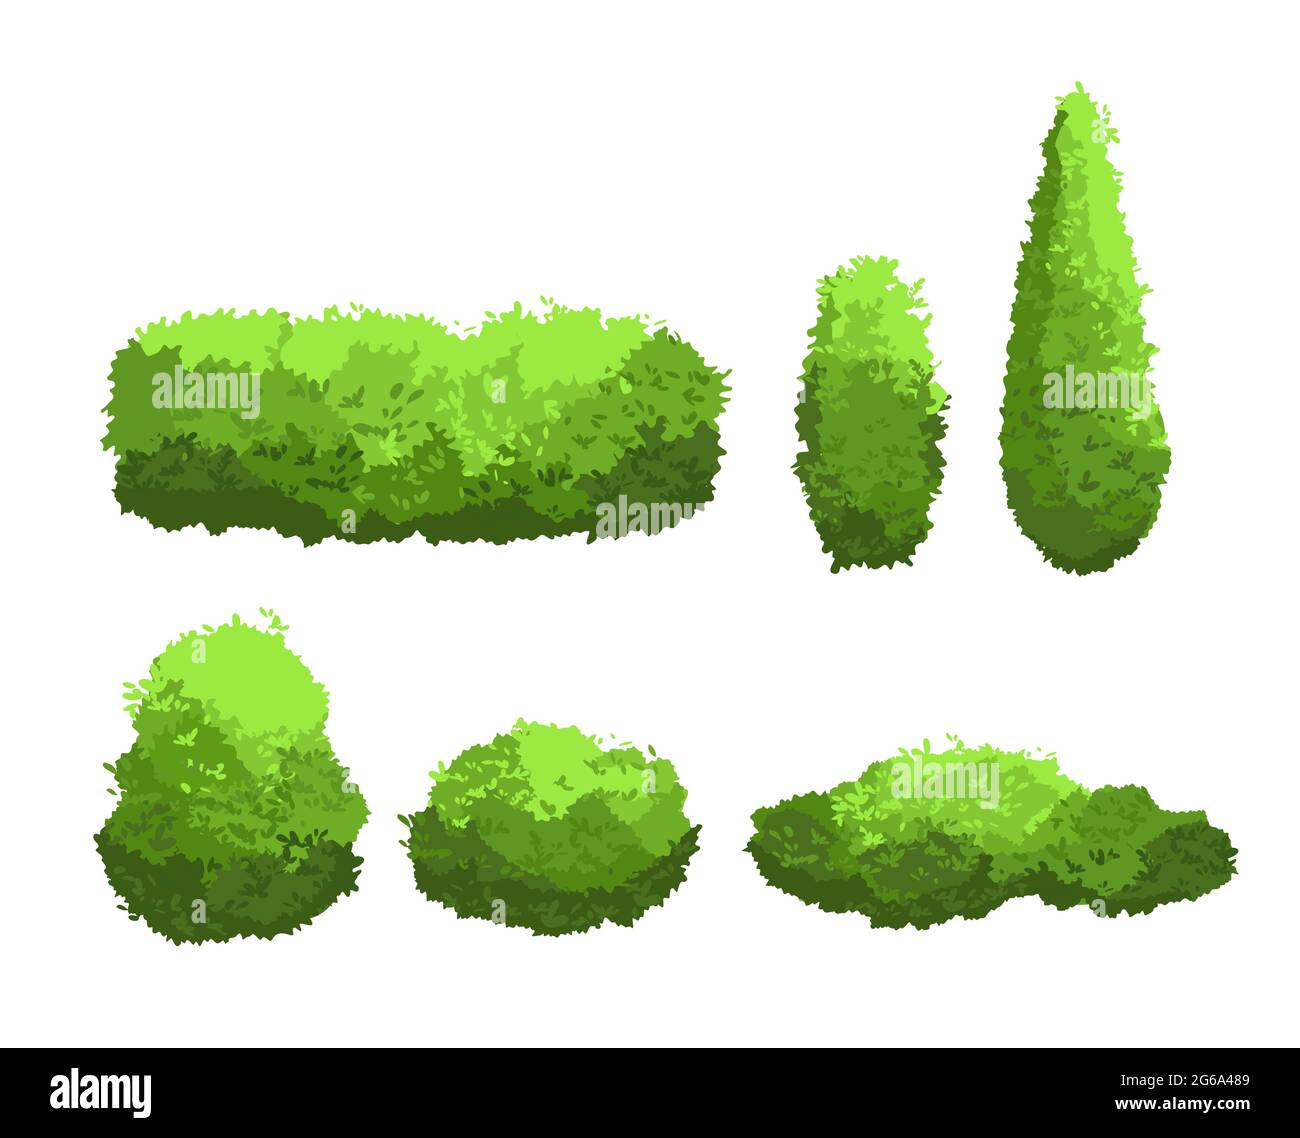 Vektor-Illustration Set von Garten grünen Büschen und dekorative Bäume verschiedene Formen. Strauch- und Buschkollektion im Cartoon-Stil auf Weiß isoliert Stock Vektor